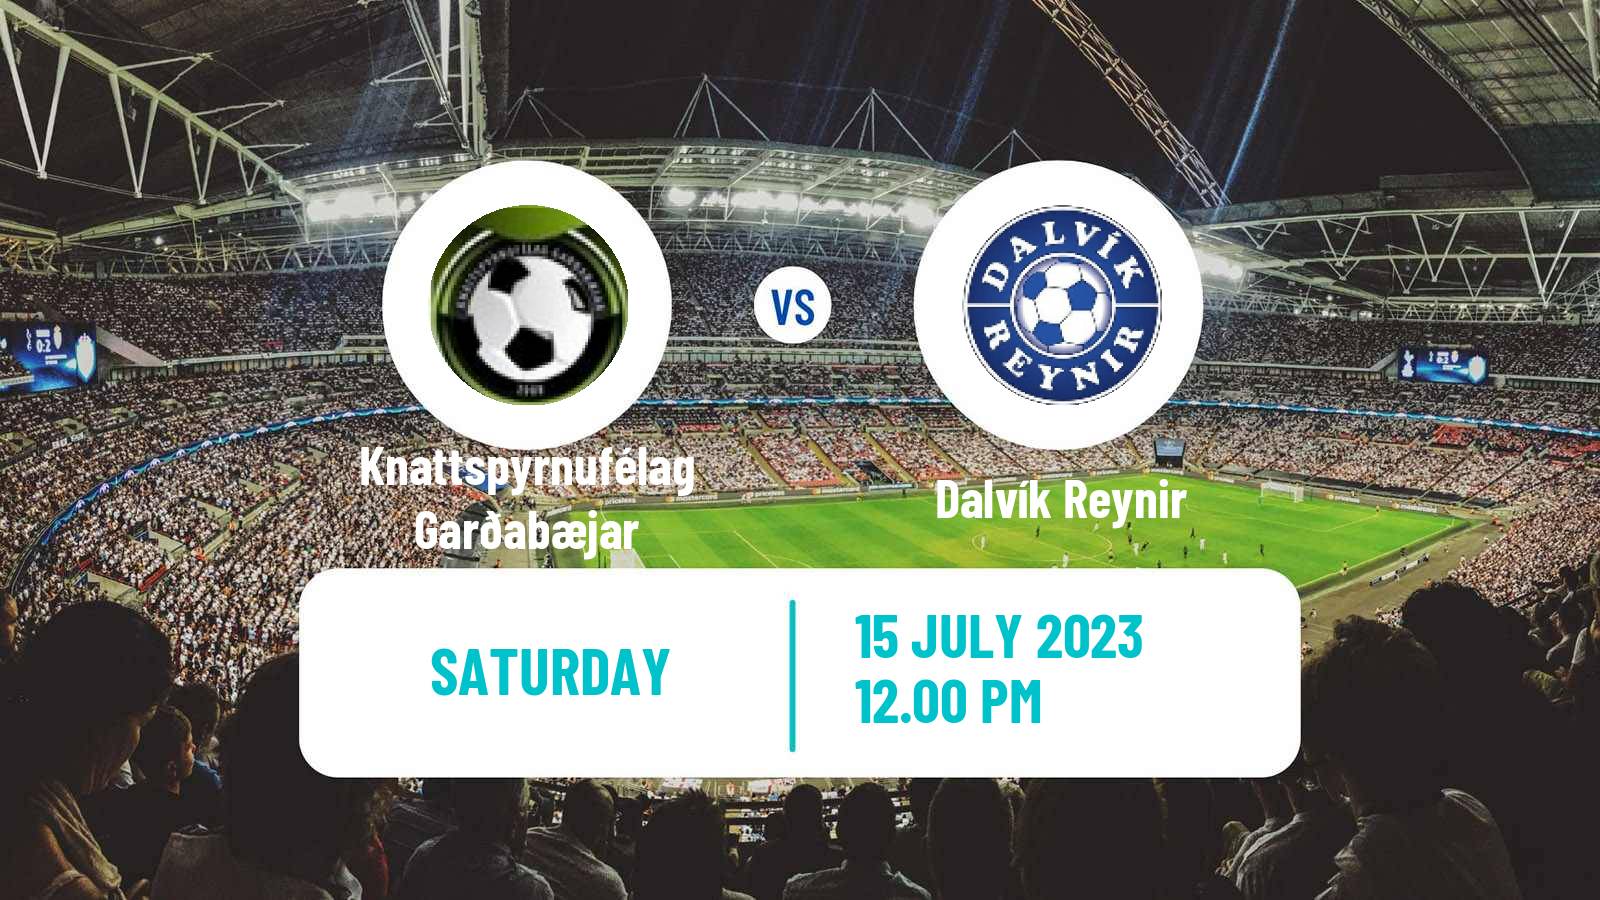 Soccer Icelandic Division 2 Knattspyrnufélag Garðabæjar - Dalvík Reynir